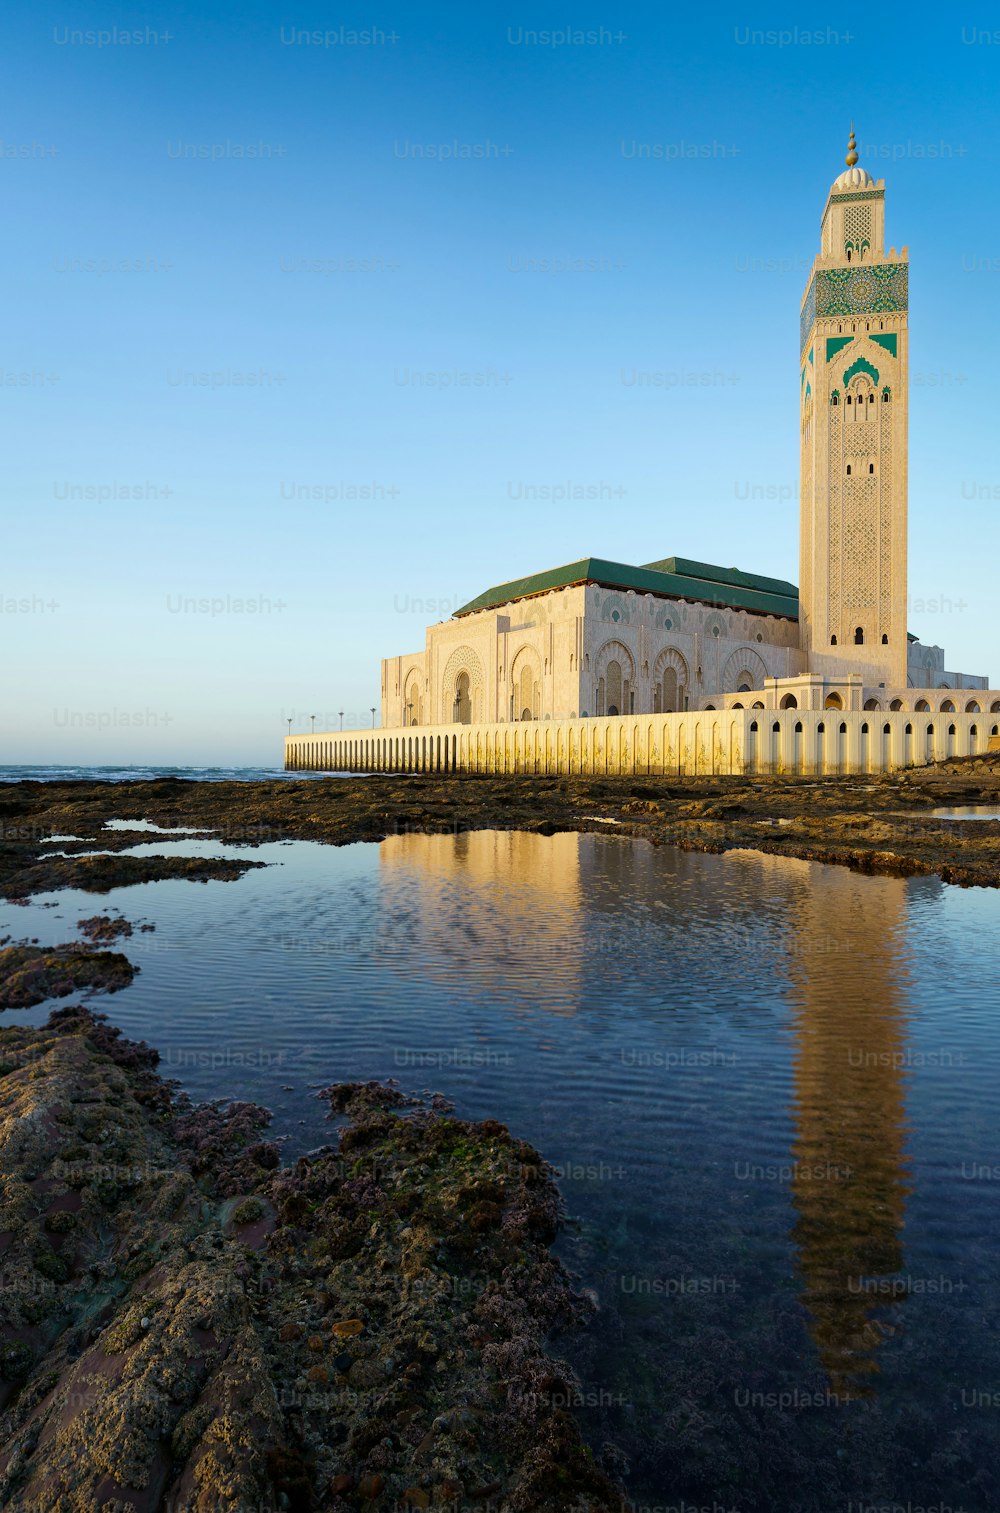 La belle mosquée Hassan II avec son reflet sur l’eau à Casablanca, Maroc